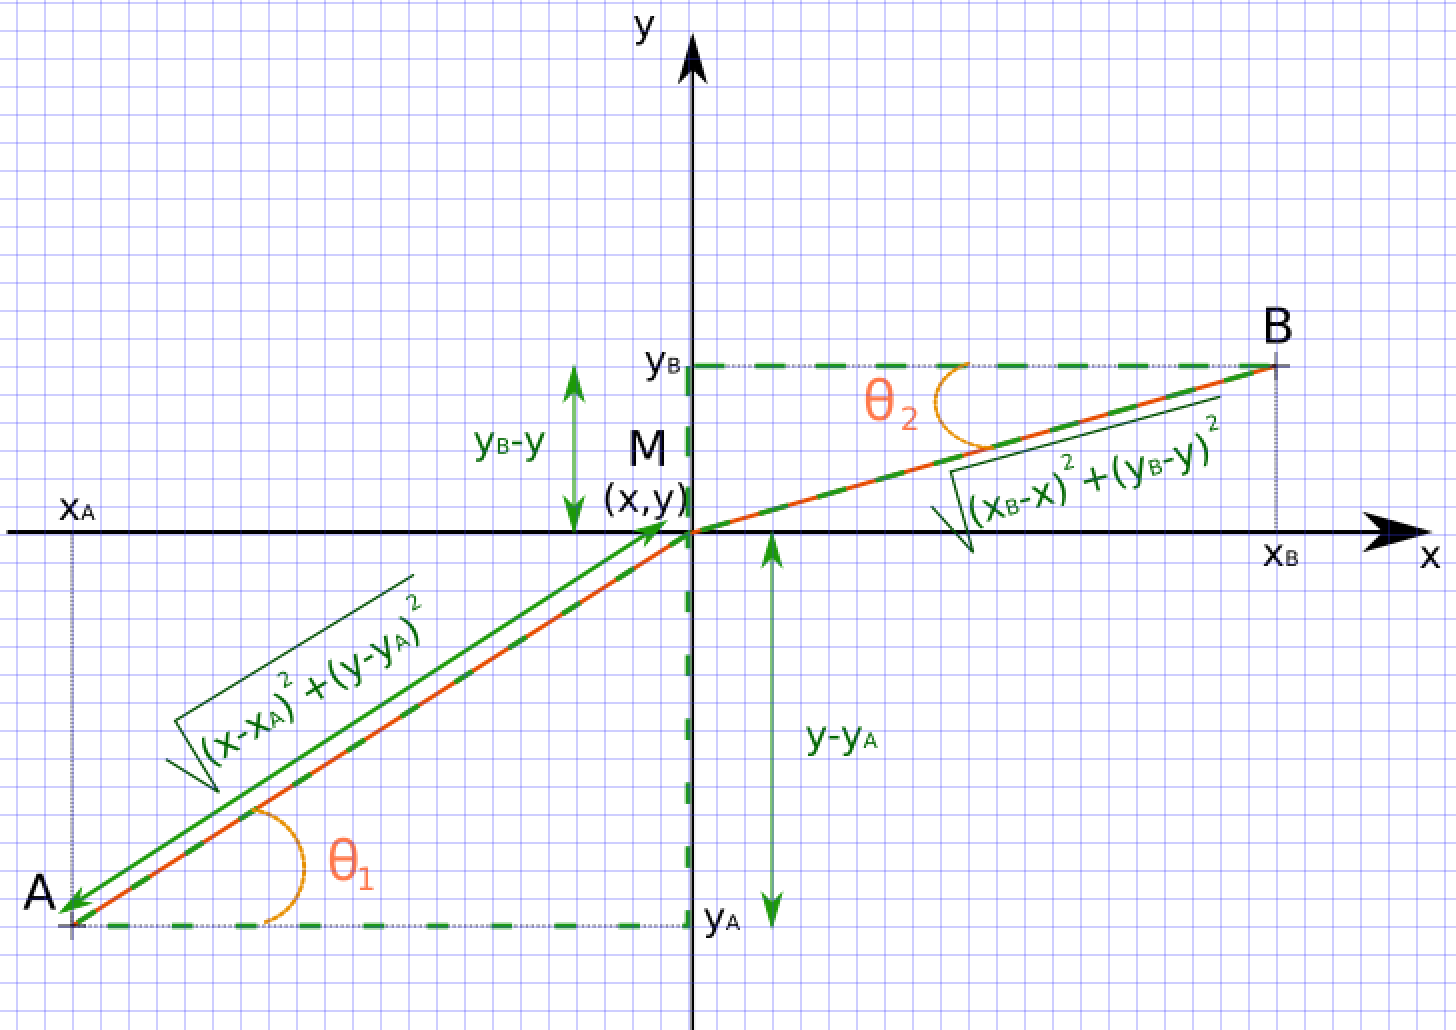 Schéma représentant les longueurs du film de part et d'autre de la marche en utilisant les relations trigonométriques